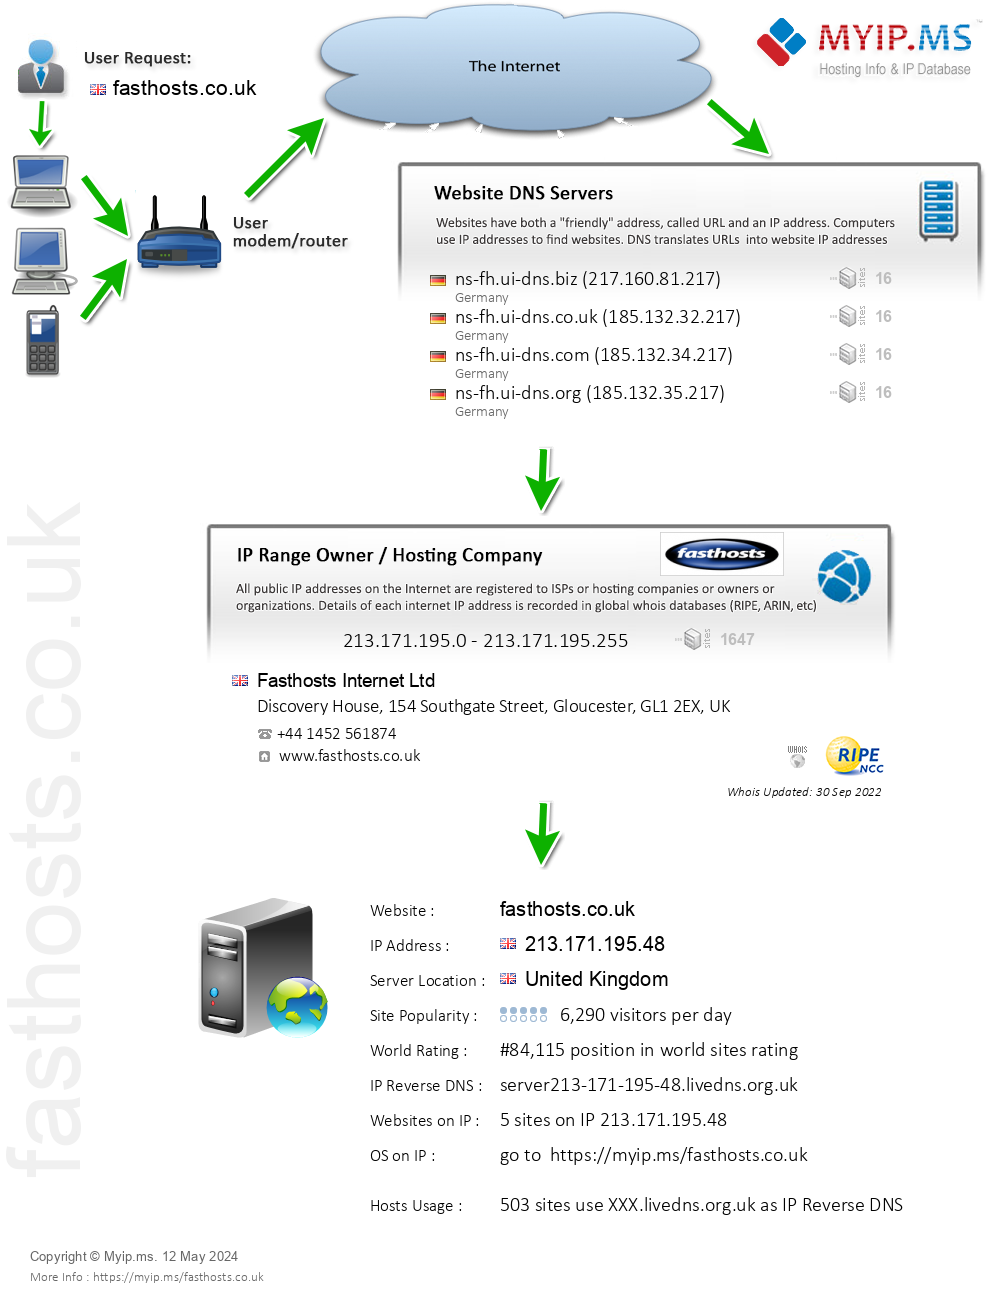 Fasthosts.co.uk - Website Hosting Visual IP Diagram